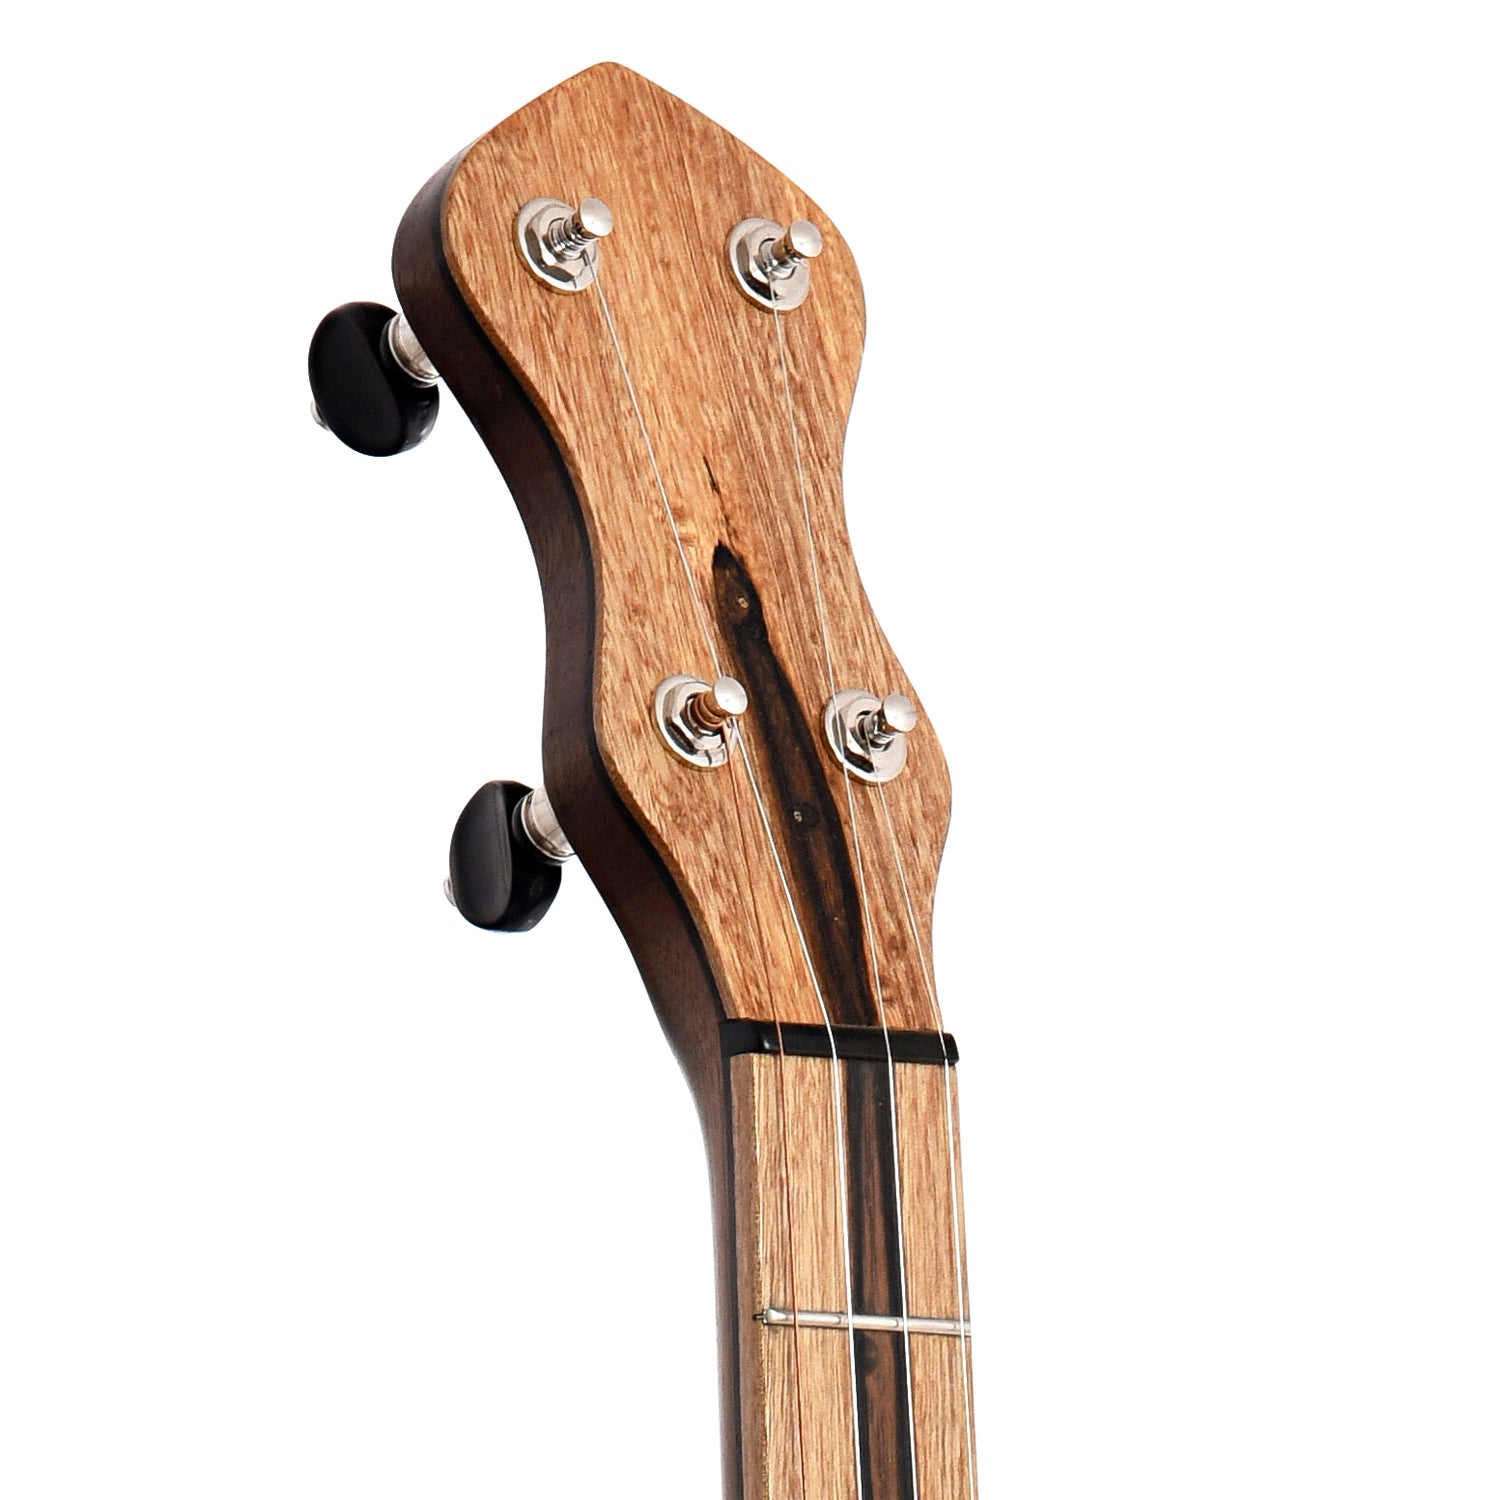 Image 6 of Dogwood Banjo Co. 12" Openback Banjo, No. 152 - SKU# DW152 : Product Type Open Back Banjos : Elderly Instruments